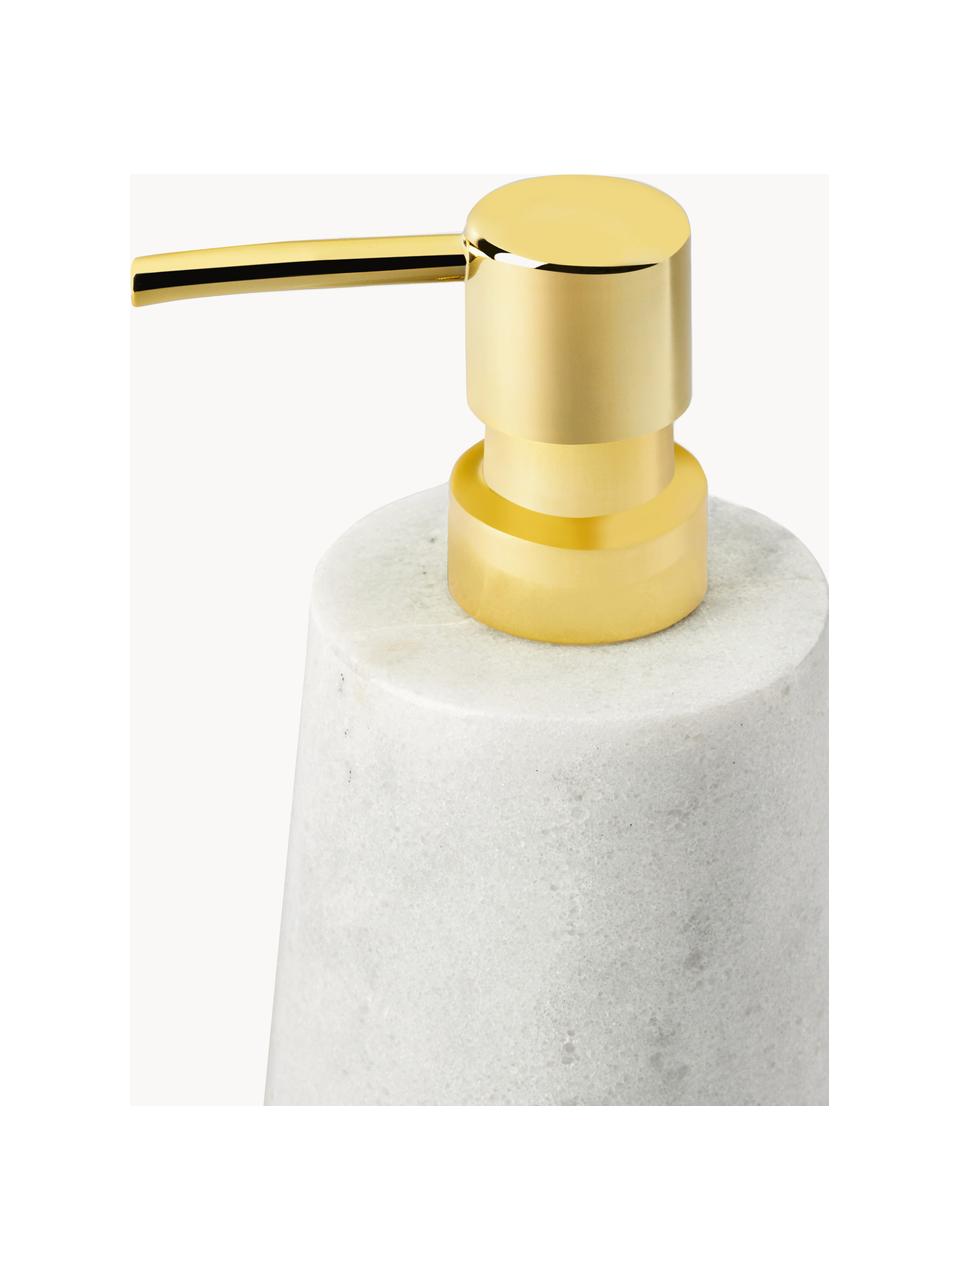 Marmor-Seifenspender Lux, Behälter: Marmor, Pumpkopf: Kunststoff, Weiß, marmoriert, Goldfarben, Ø 8 x H 17 cm